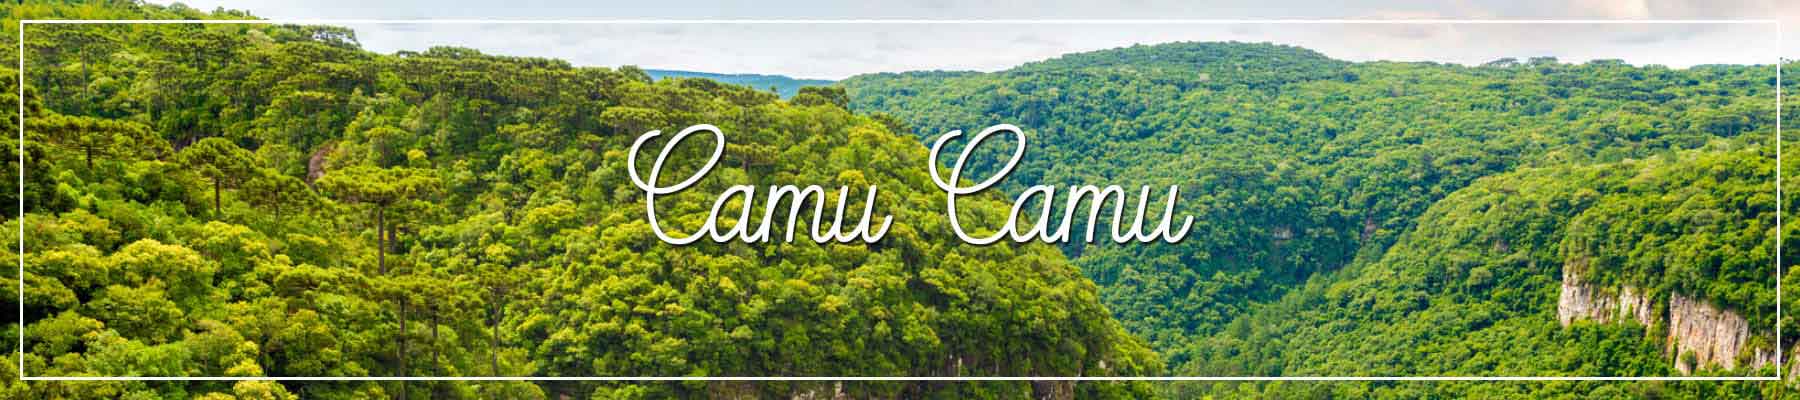 Camu Camu - Tal Peru